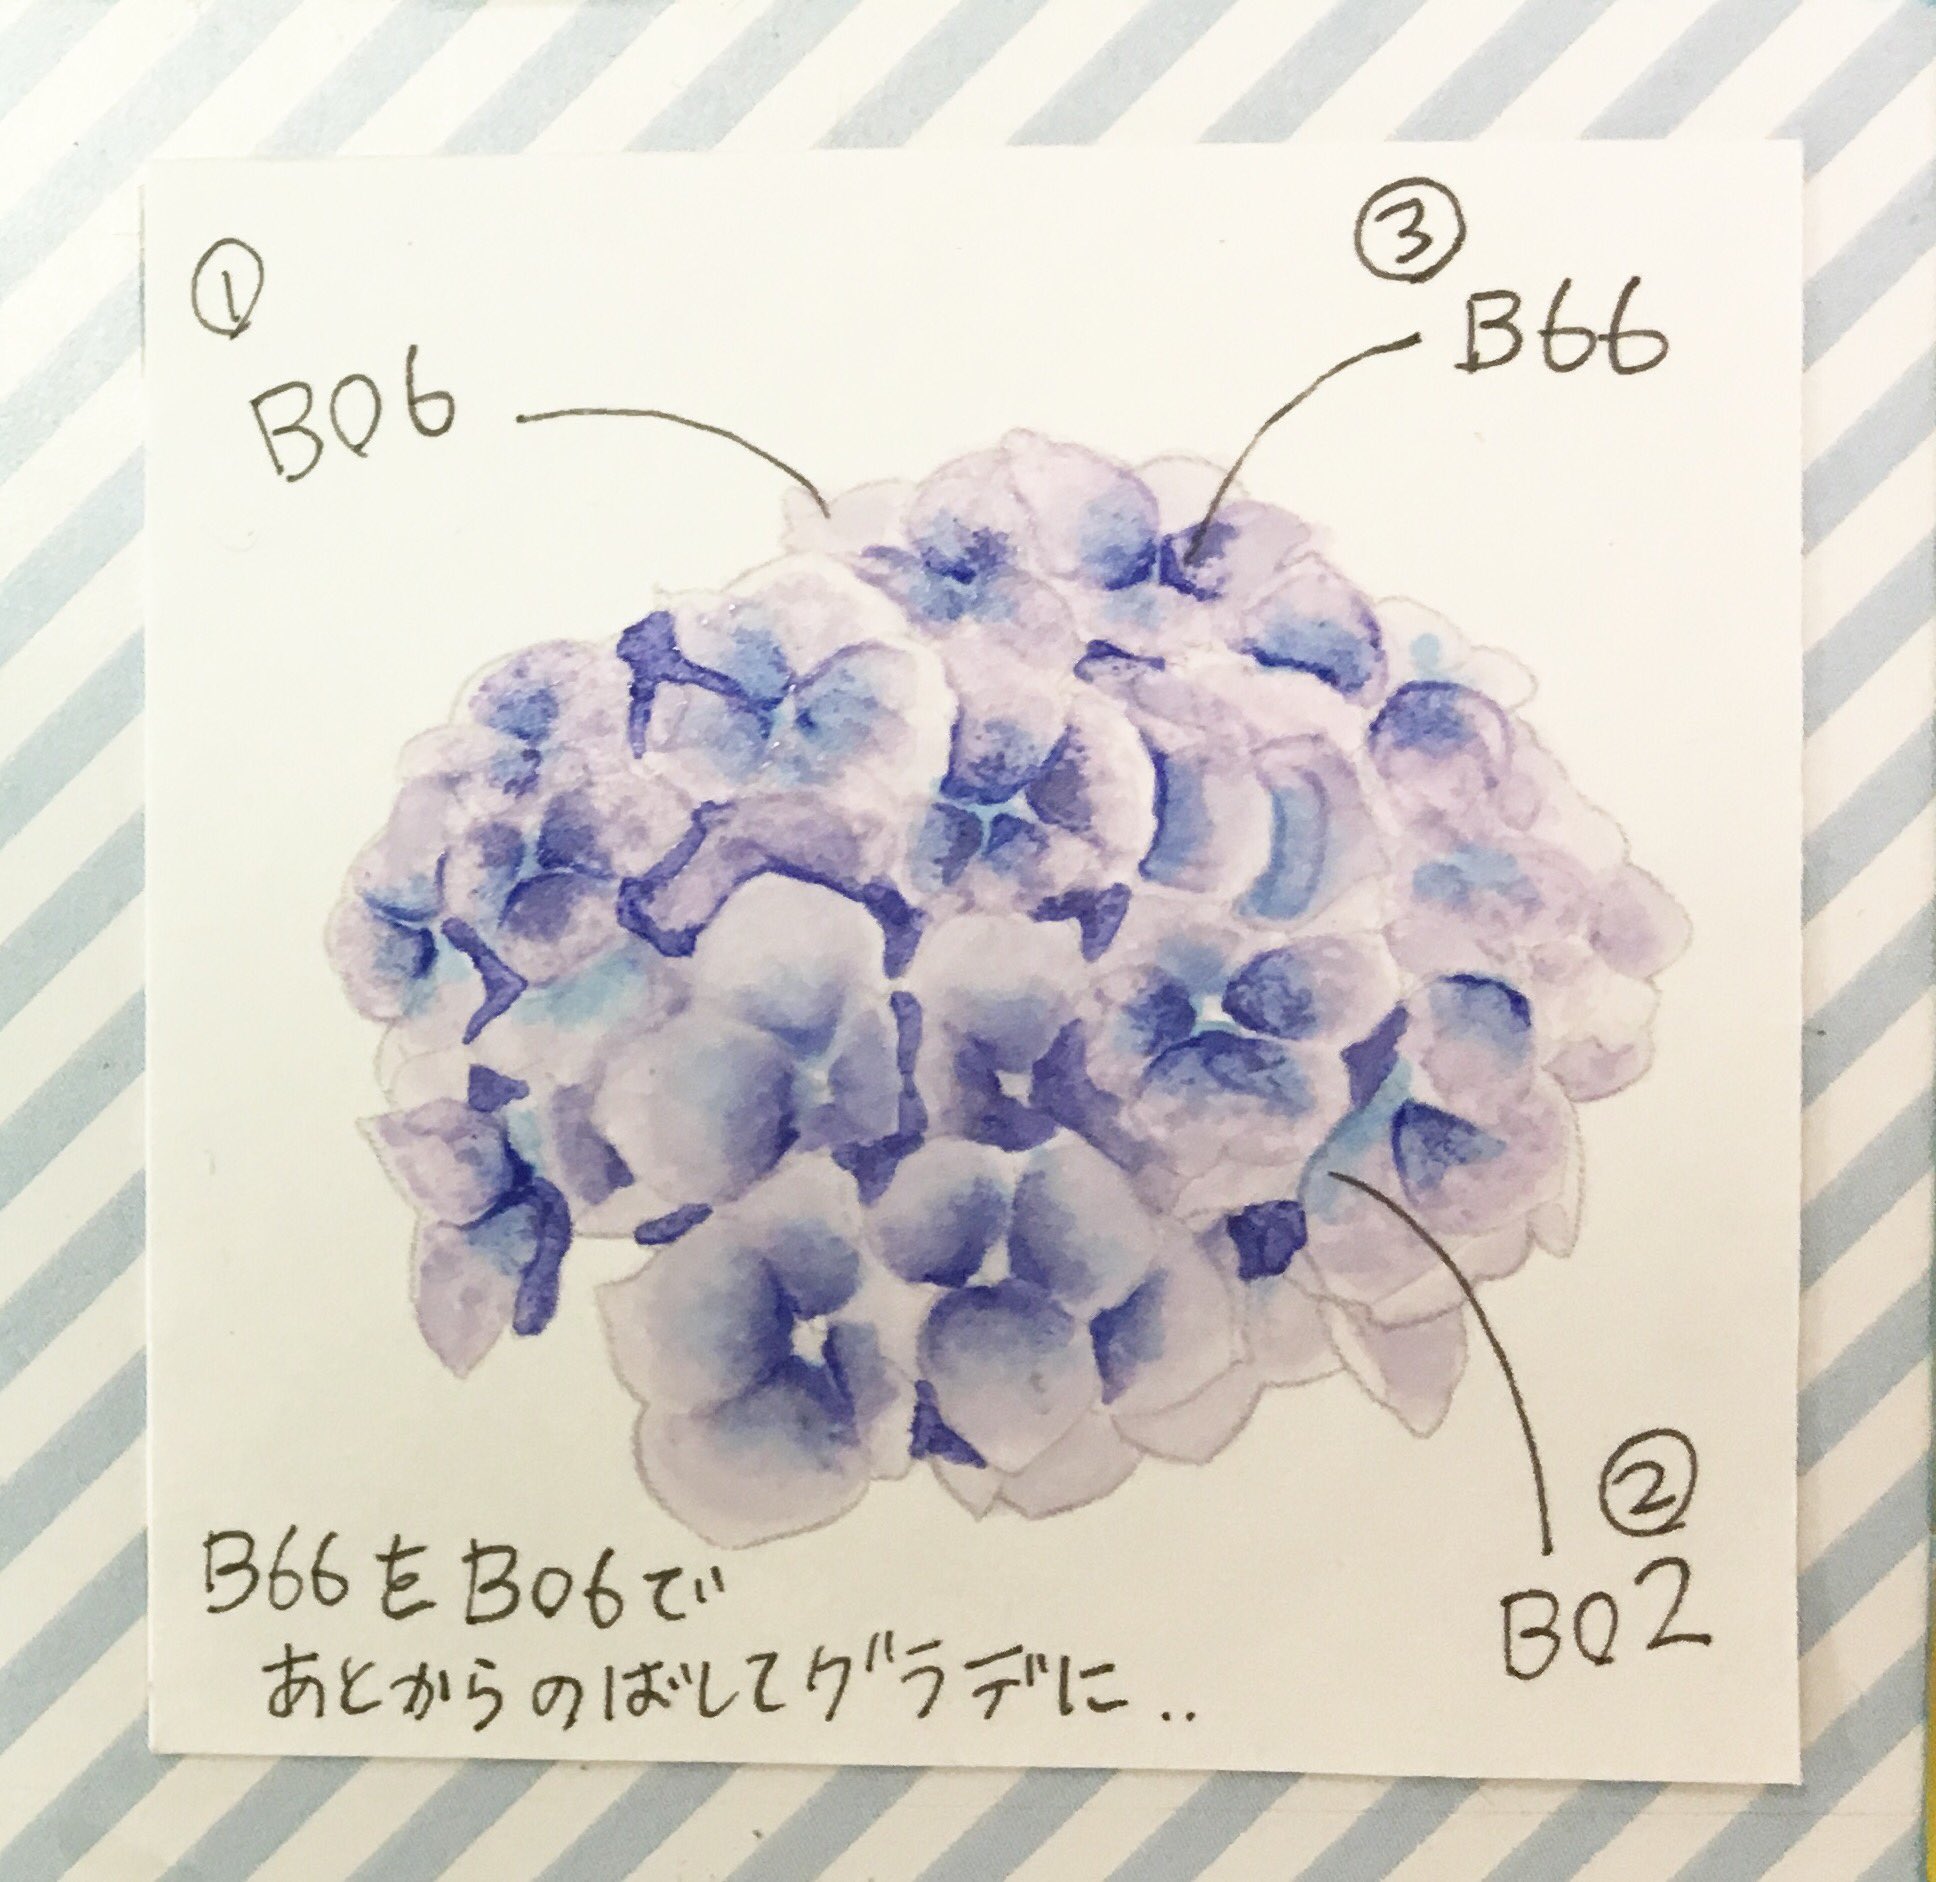 コピック公式 Copic Official 紫陽花の塗り方 ちょっともう季節外れなのですが紹介します B66で花びらの中心をラフに塗る B60で外側に向かってb66を伸ばしていく B02をちょこっと塗って再びb60で伸ばす をくり返すことで 水彩っぽさもある紫陽花が